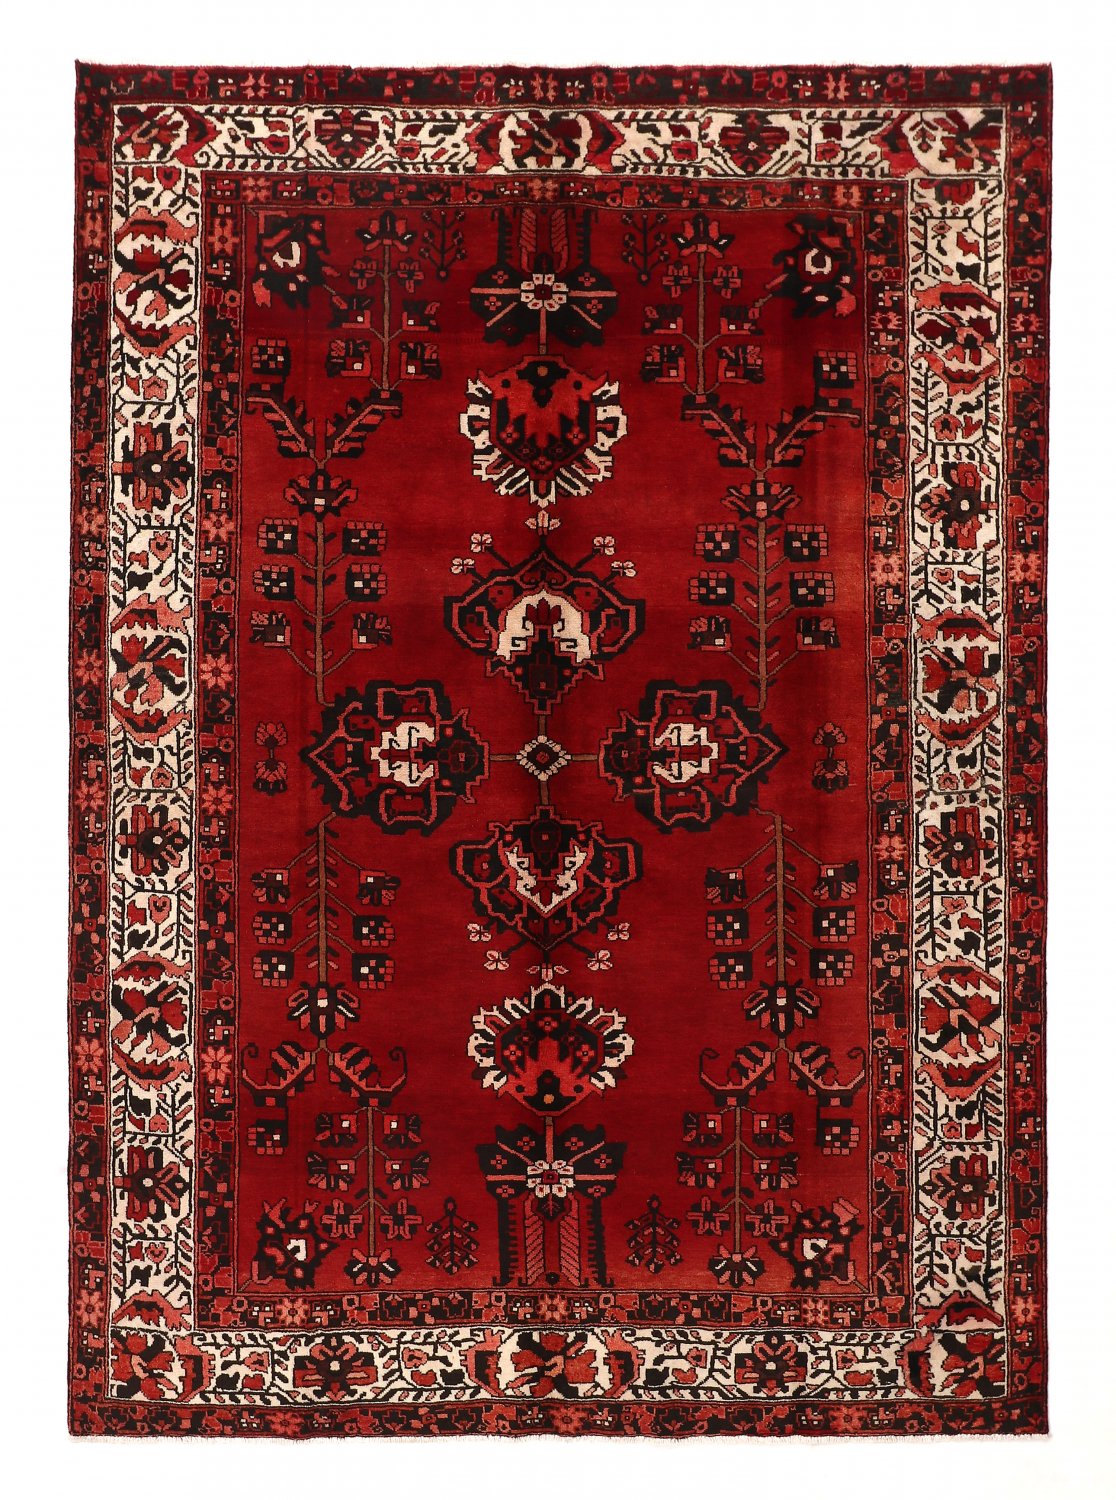 Persian rug Hamedan 272 x 192 cm